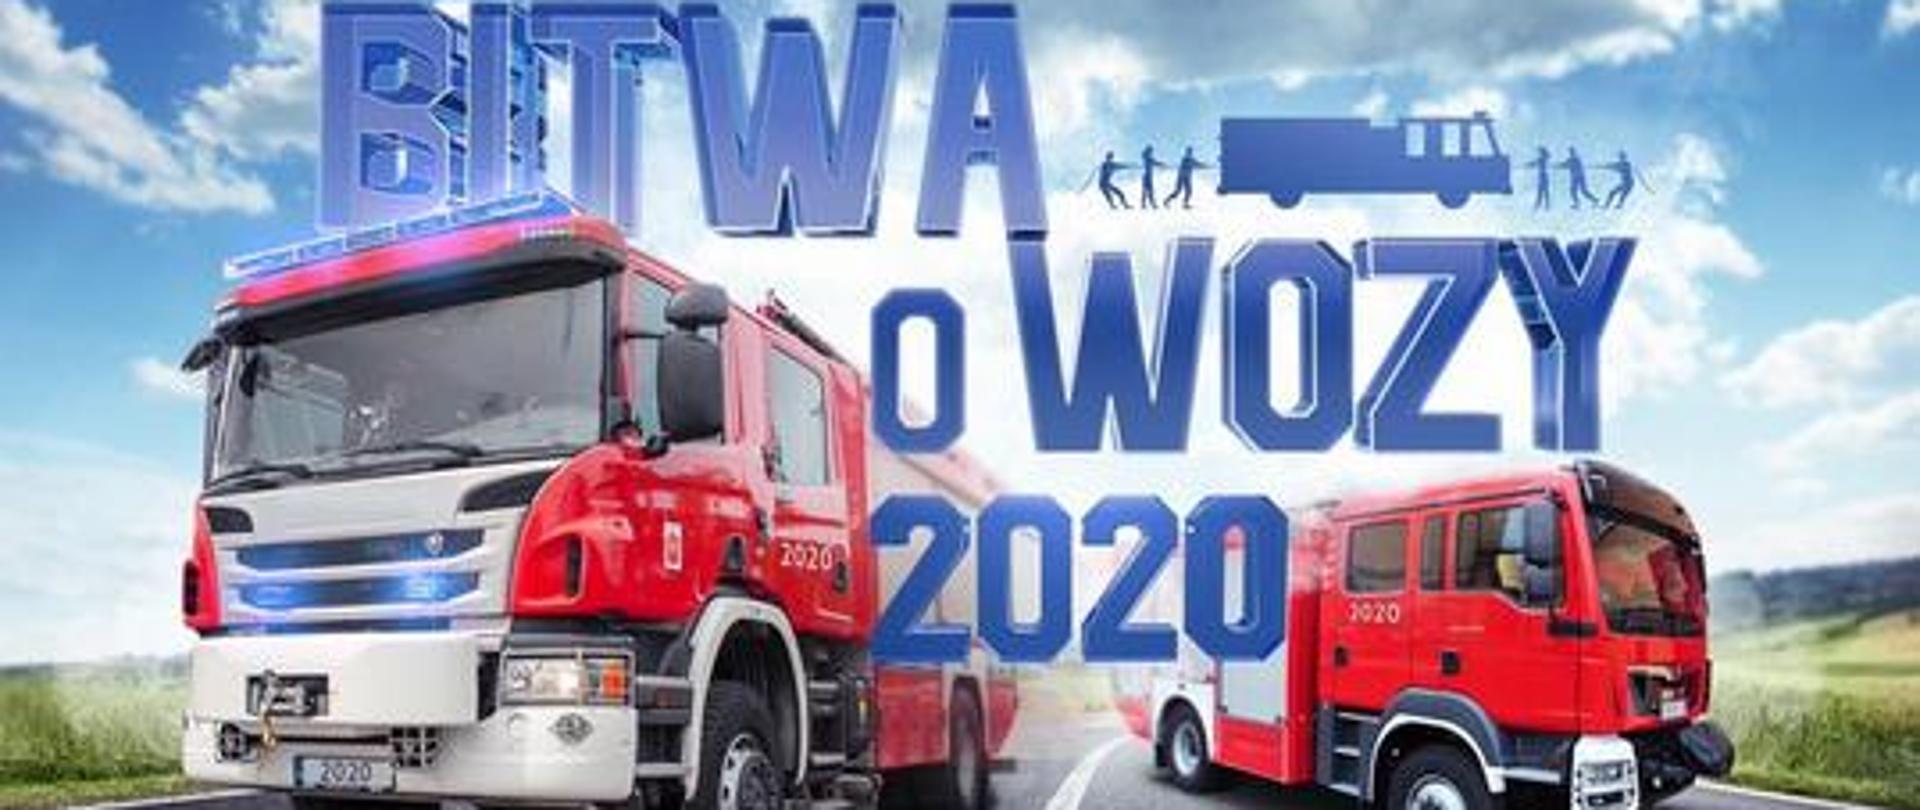 grafika dot konkursu Bitwy o Wozy 2020 r. Grafika przedstawia 2 strażackie samochody na jezdni